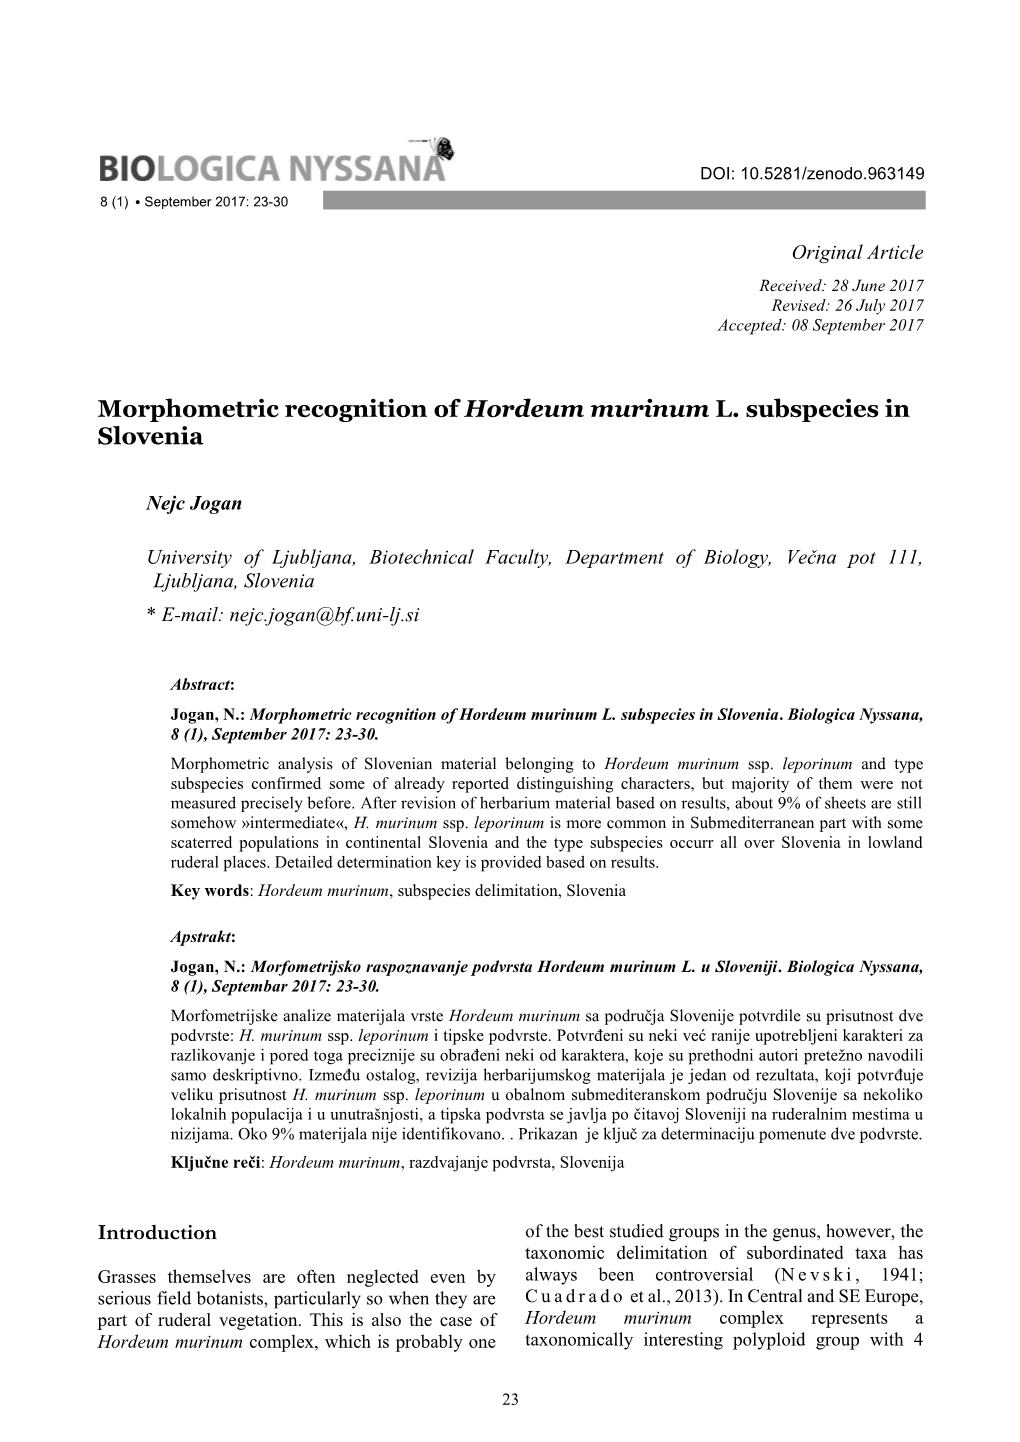 Morphometric Recognition of Hordeum Murinum L. Subspecies in Slovenia